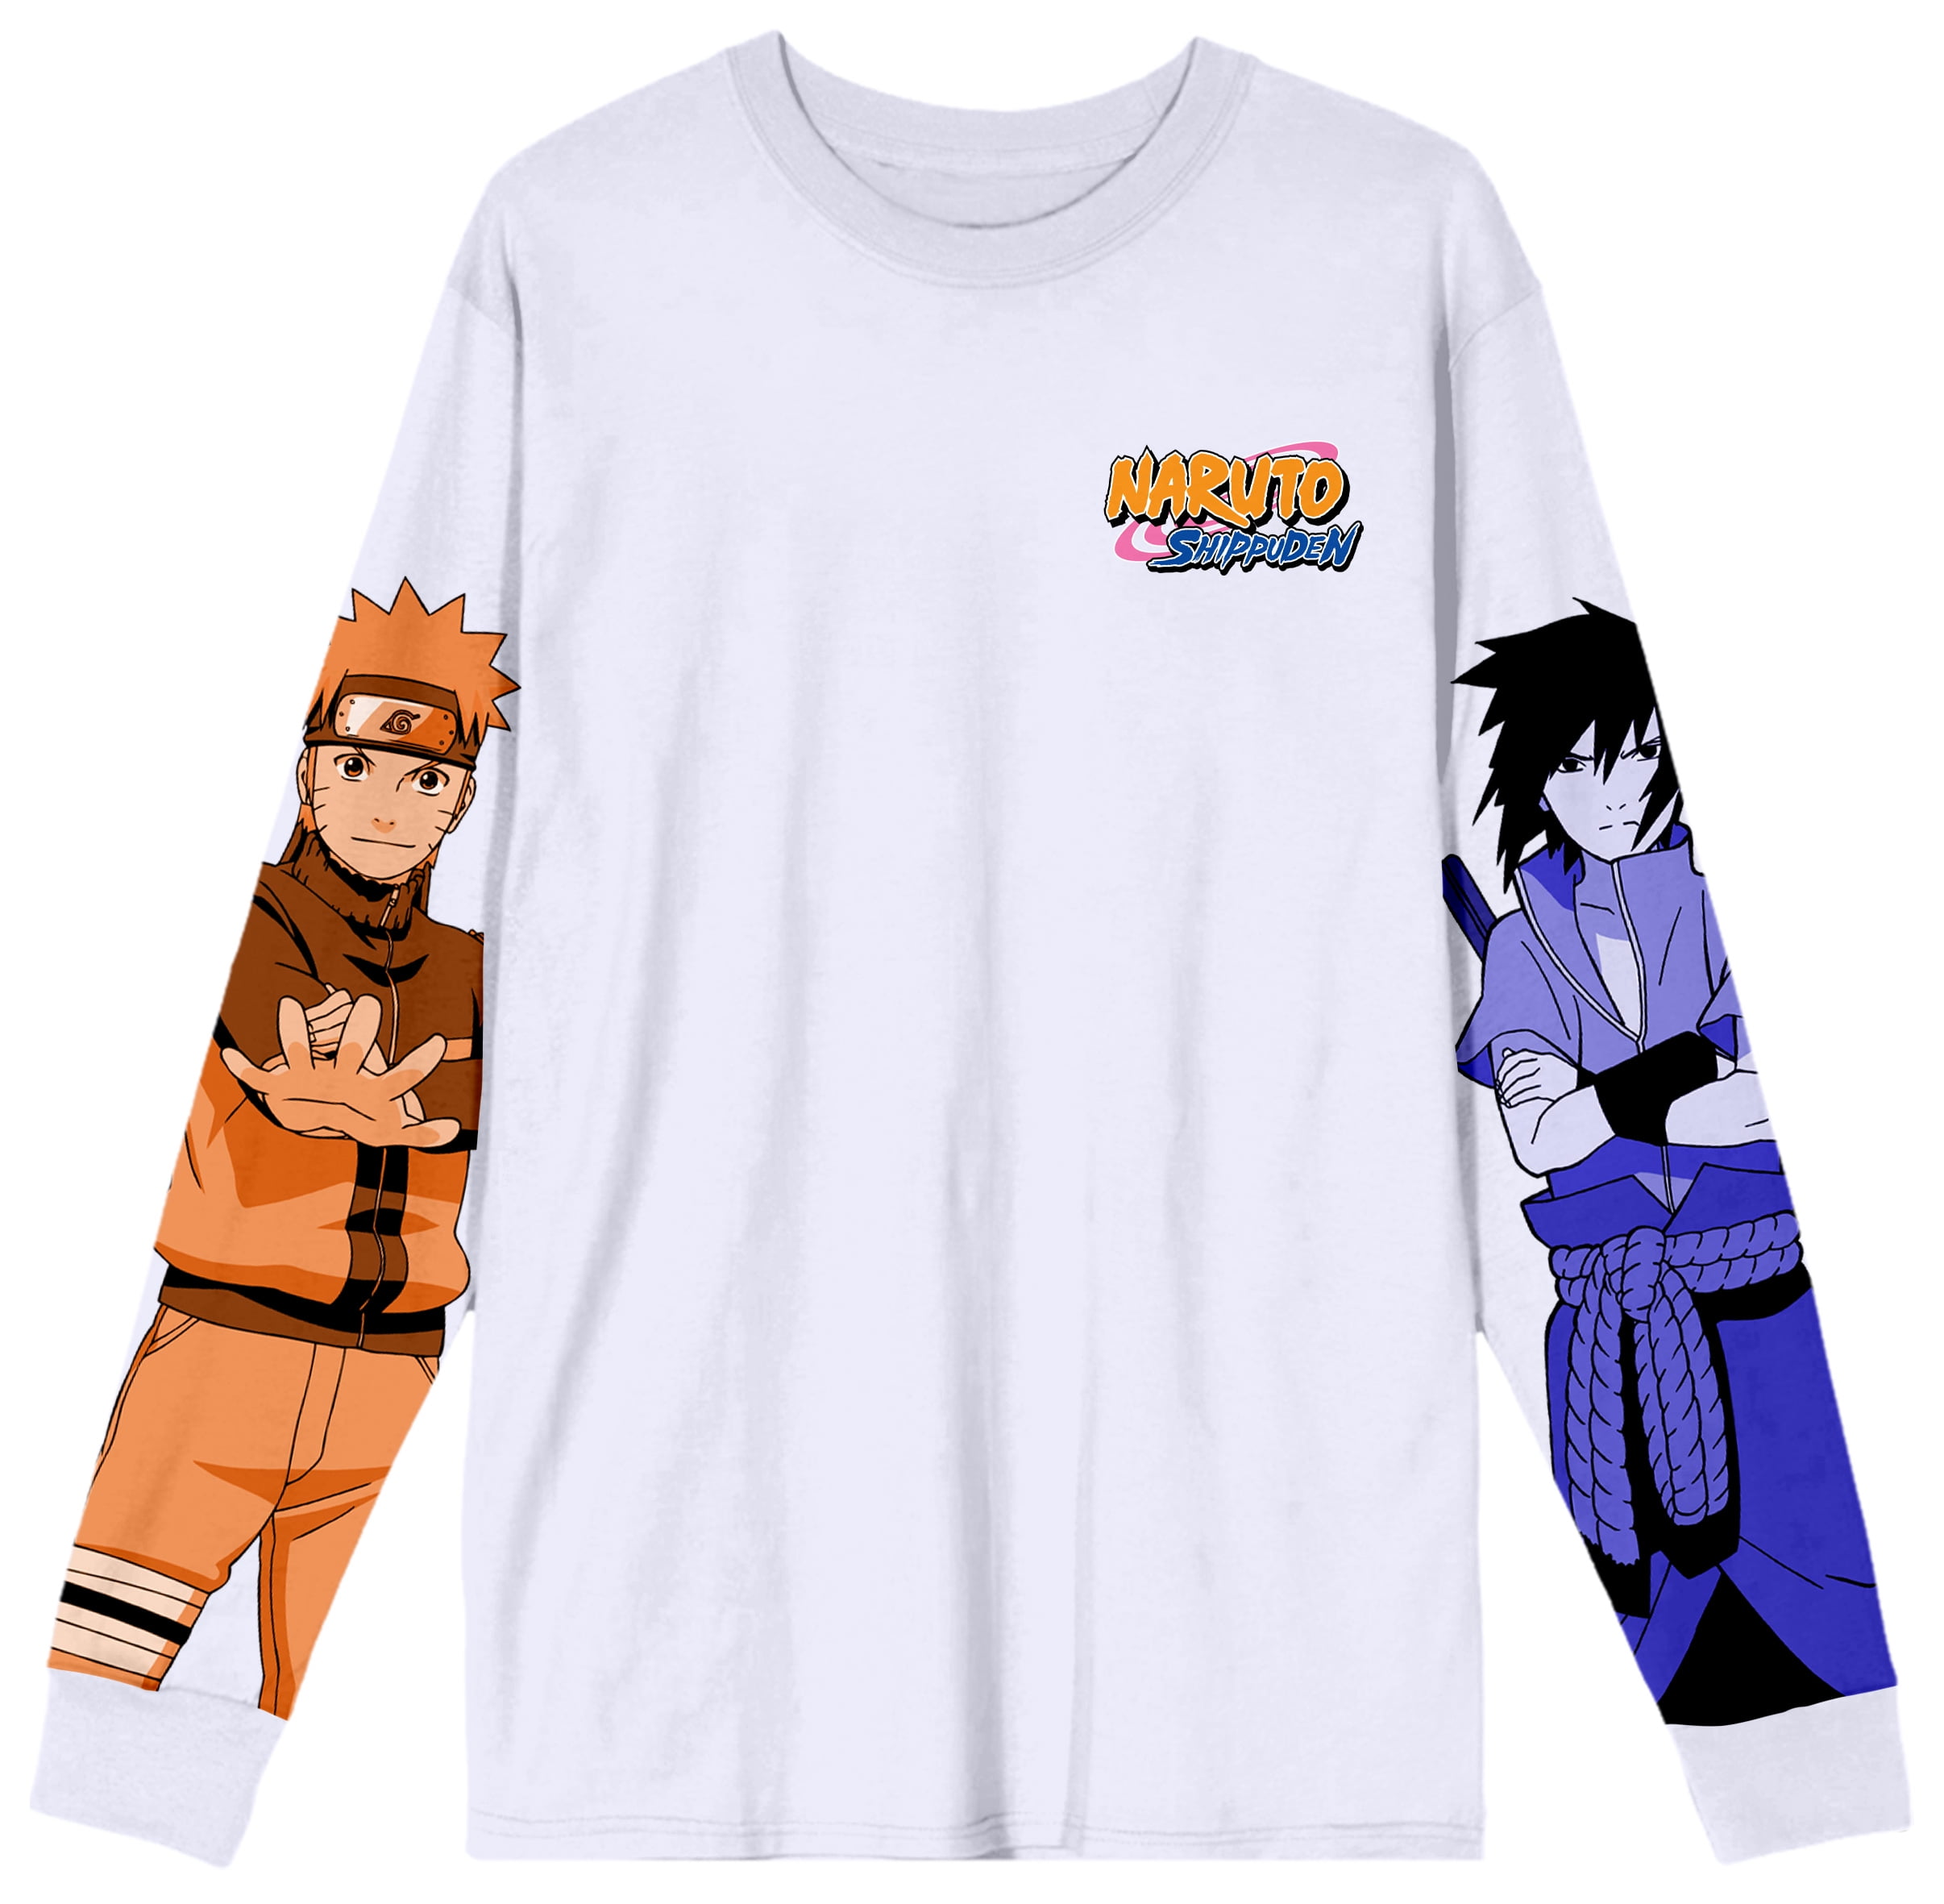 Naruto Shippuden Naruto and Sasuke Sleeve Print Shirt-XL - Walmart.com